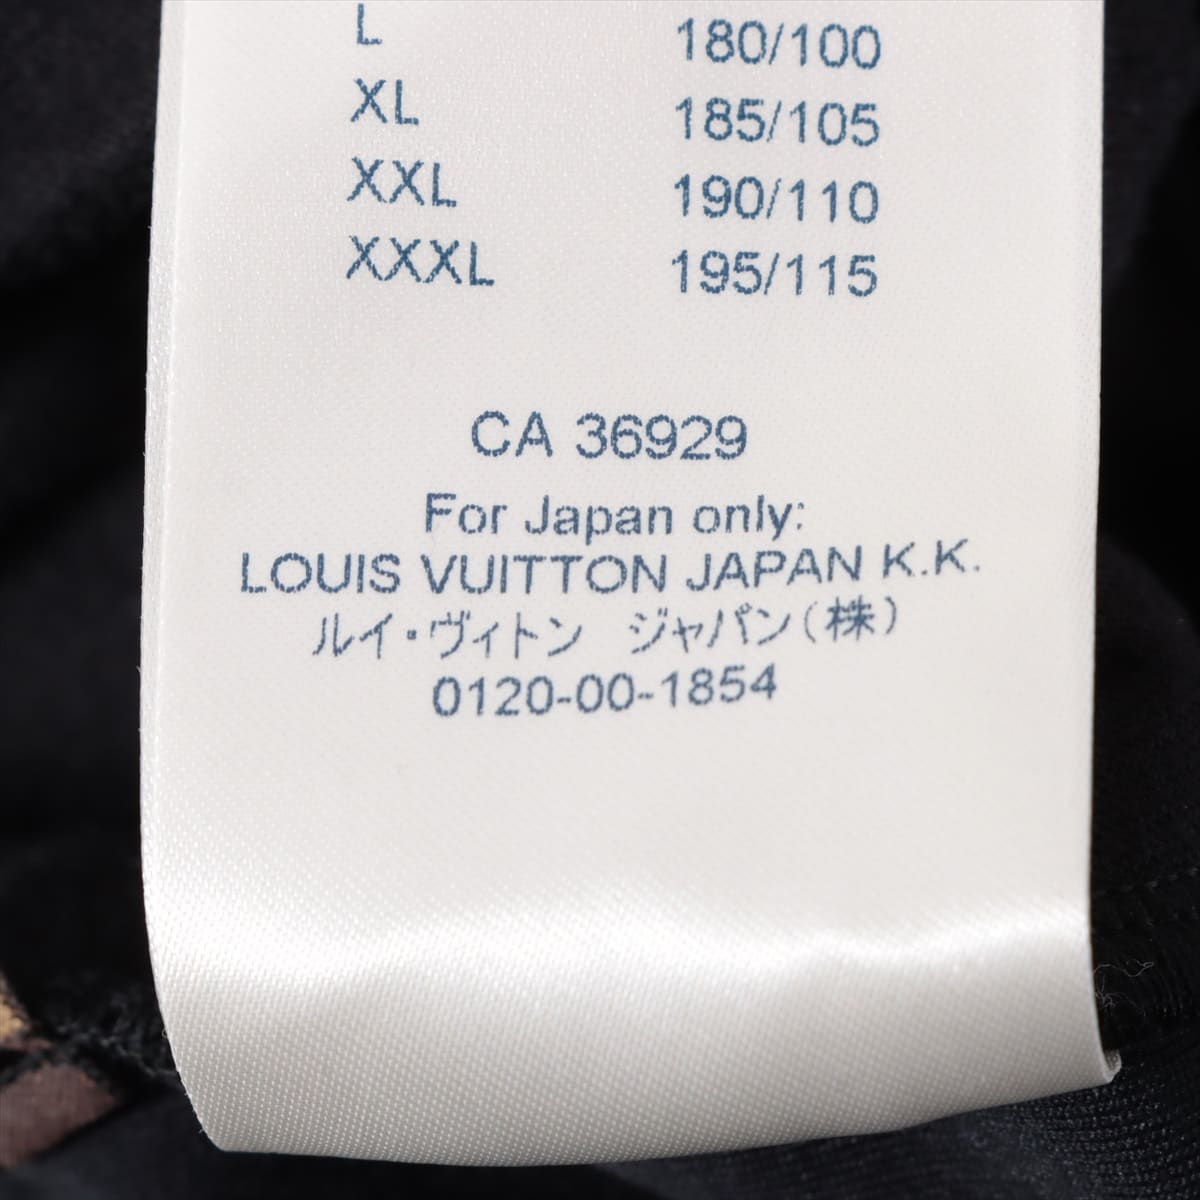 Louis Vuitton 19SS Cotton Cargo pants XXS Men's Black  Monogram embossed RM191 Velour